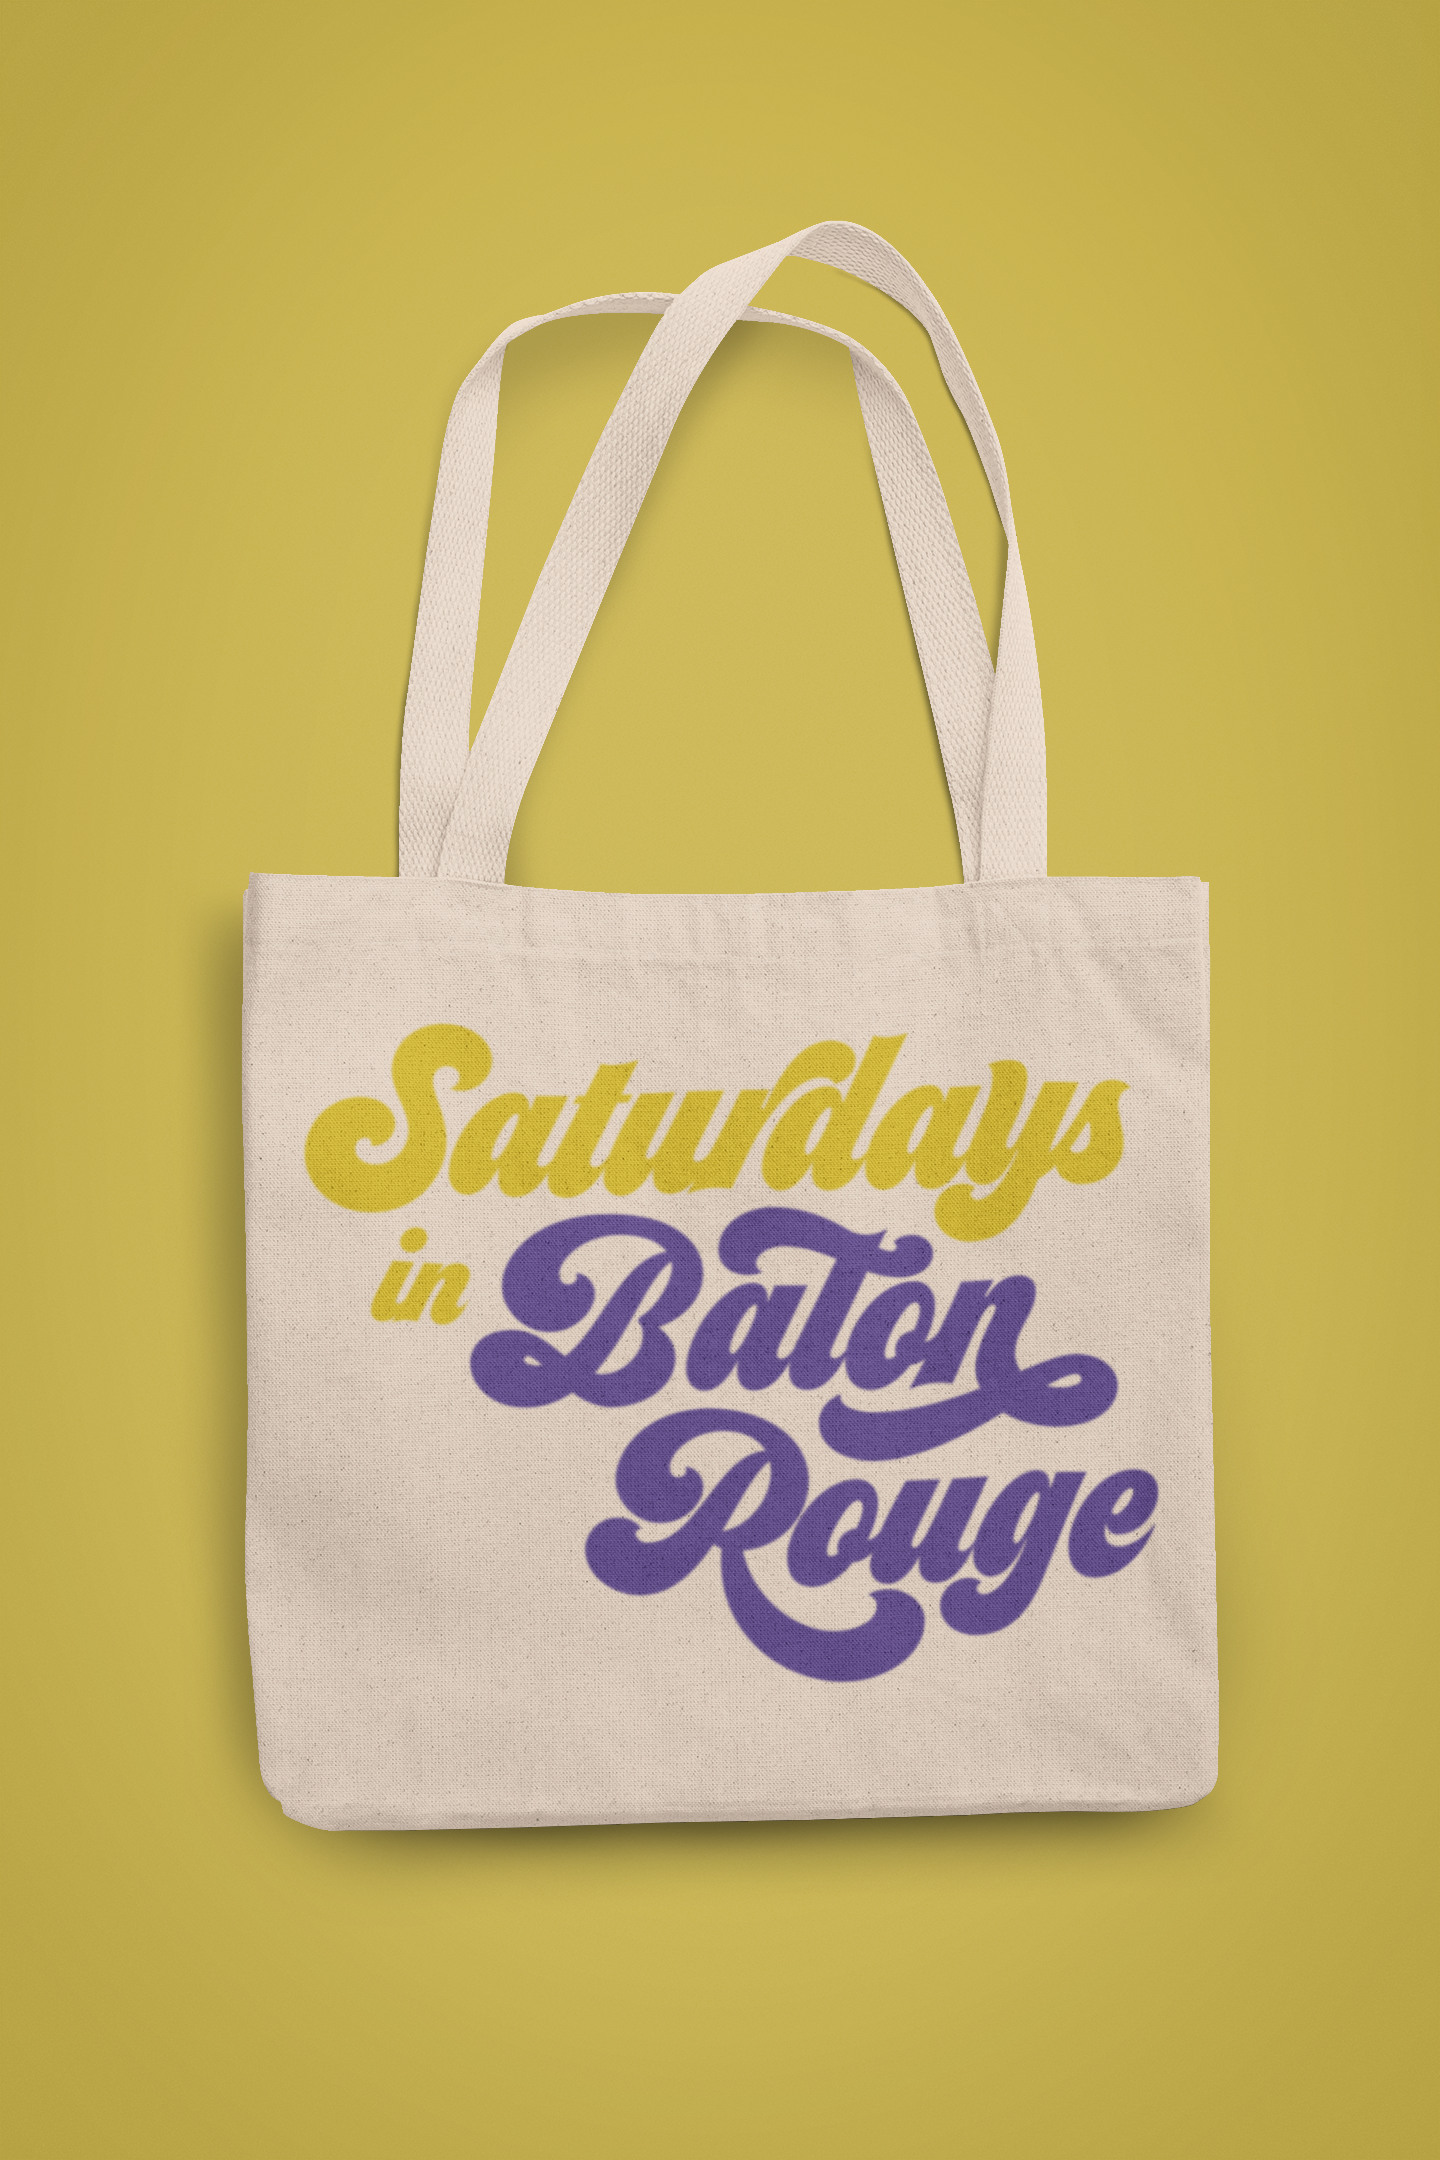 Saturdays in Baton Rouge Louisiana SVG Digital Download Design File